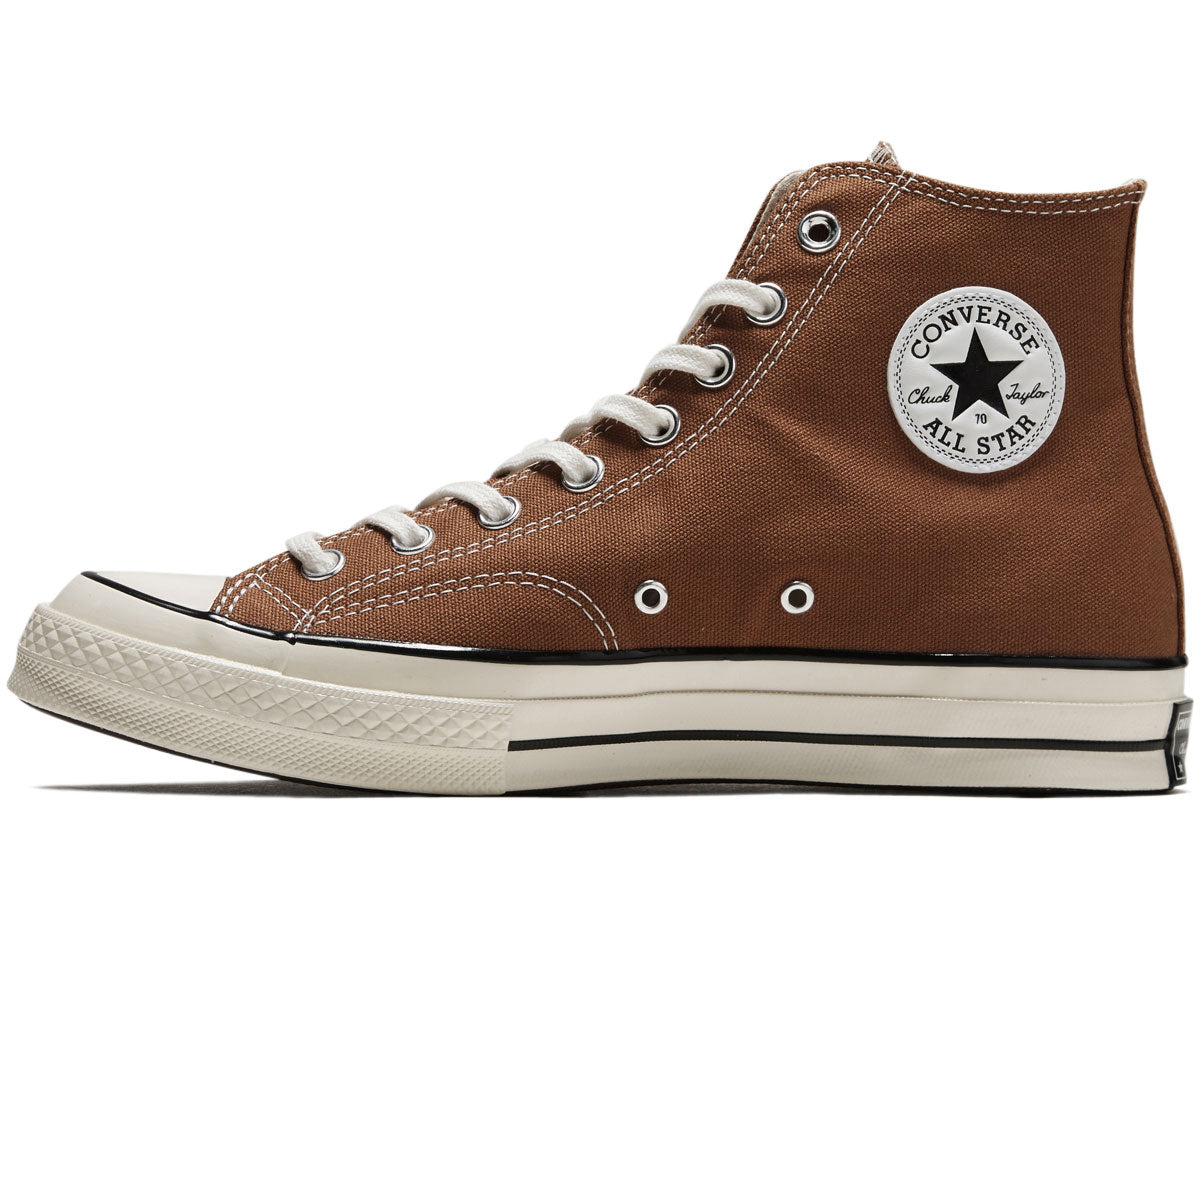 Converse Chuck 70 Hi Shoes - Tawny Owl/Egret/Black image 2